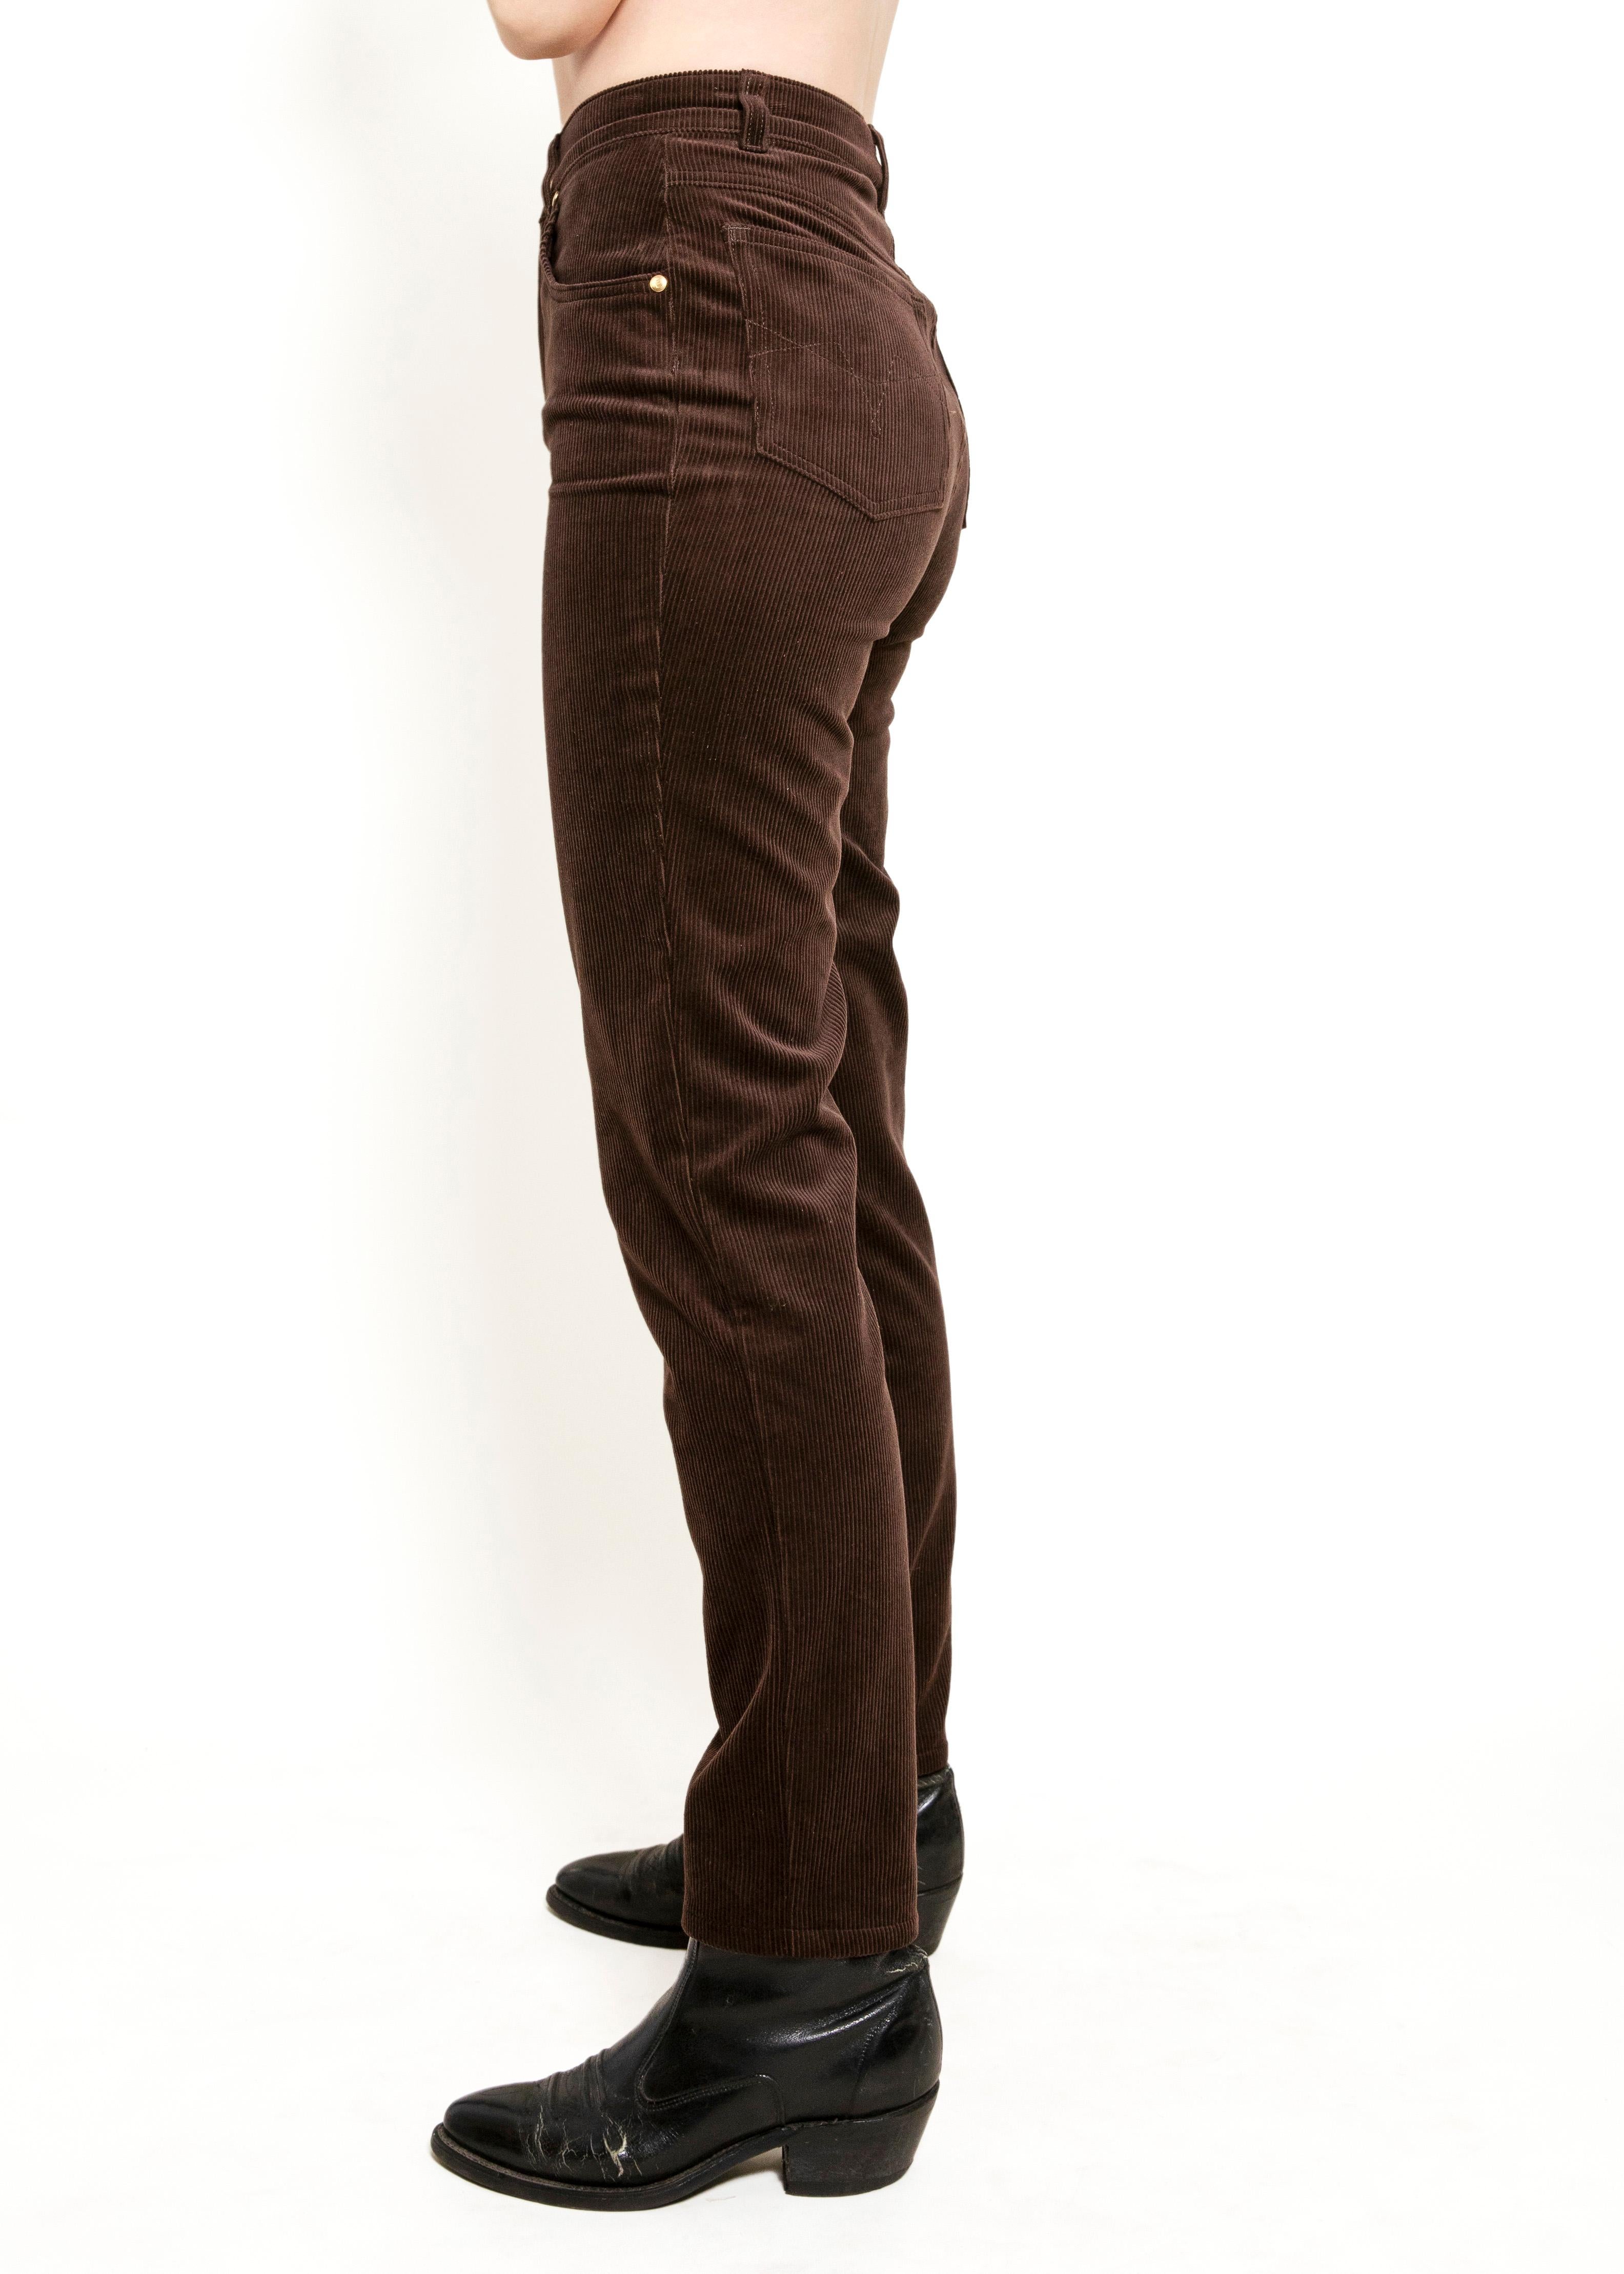 Prenez un risque et rehaussez votre garde-robe avec le pantalon en velours côtelé Choc Brn d'Escada. Doté d'une taille haute et d'une coupe flatteuse dans une riche couleur marron chocolat, ce pantalon est à la fois audacieux et élégant. Parfait